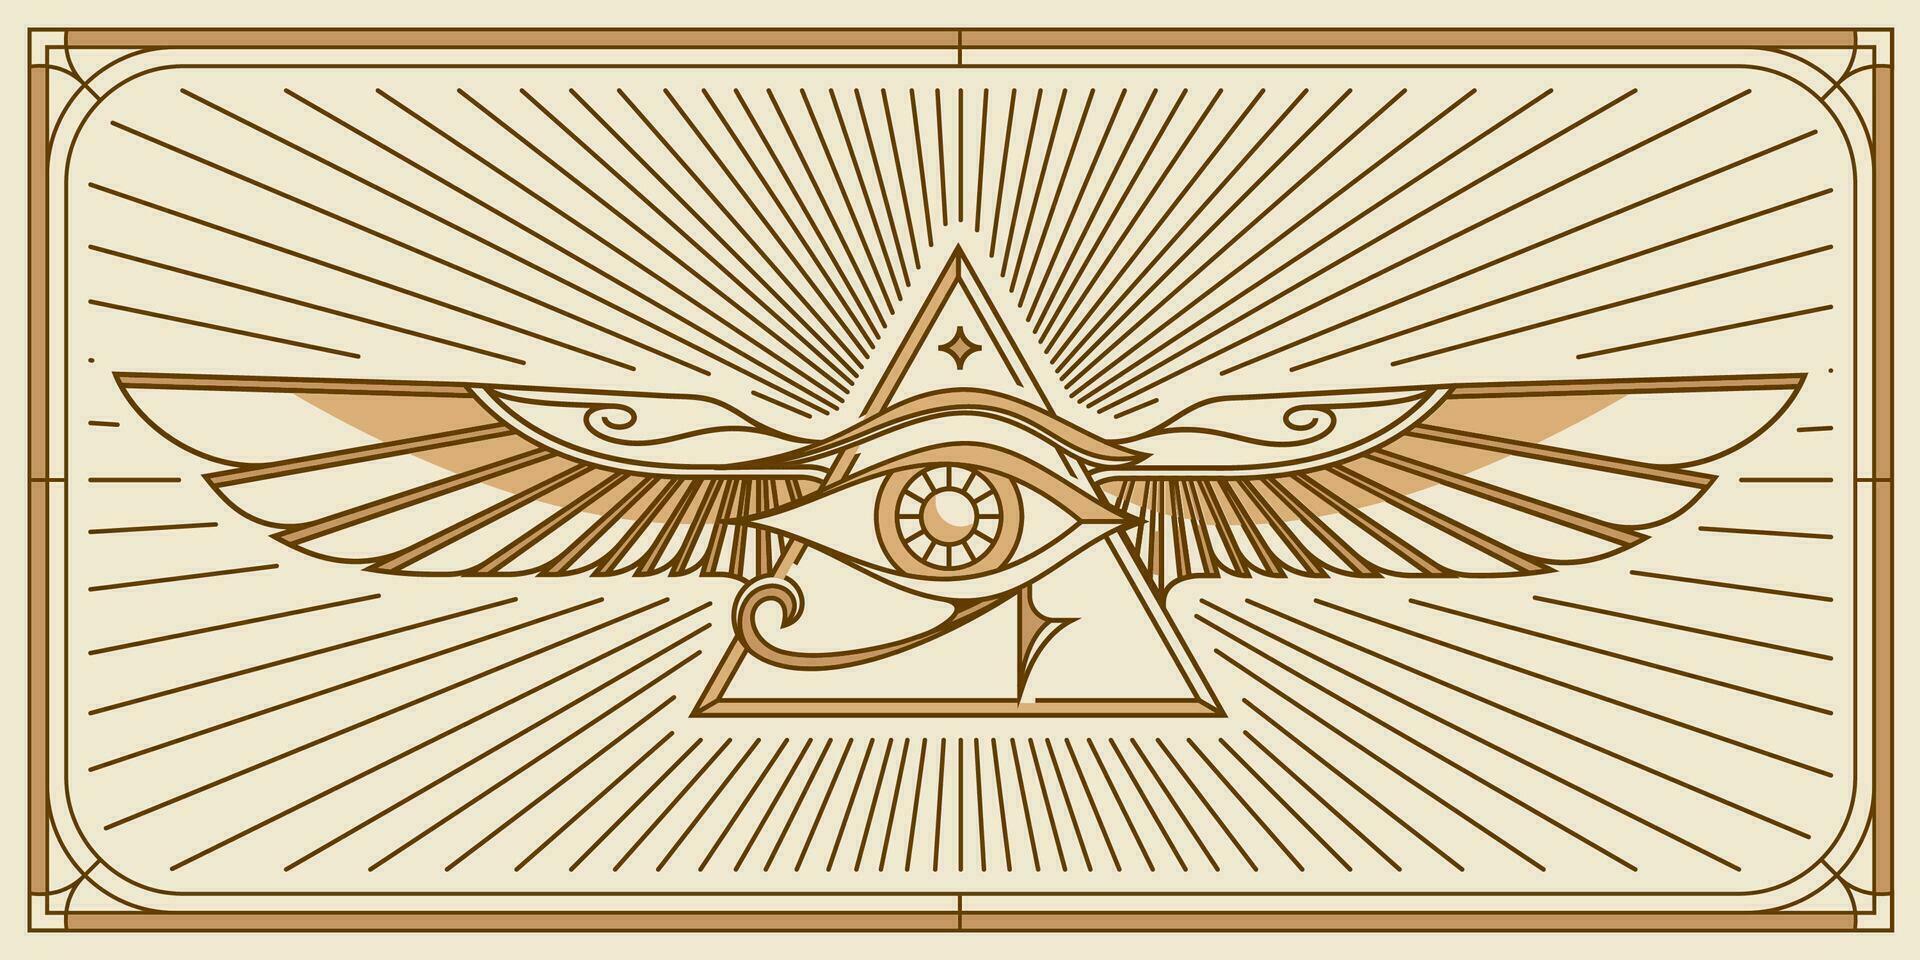 öga av horus med helig scarab vingar design. Allt seende öga av Gud i helig geometri triangel med fågel vingar av falk eller ängel, murverk och illuminati symbol, vektor logotyp eller emblem design